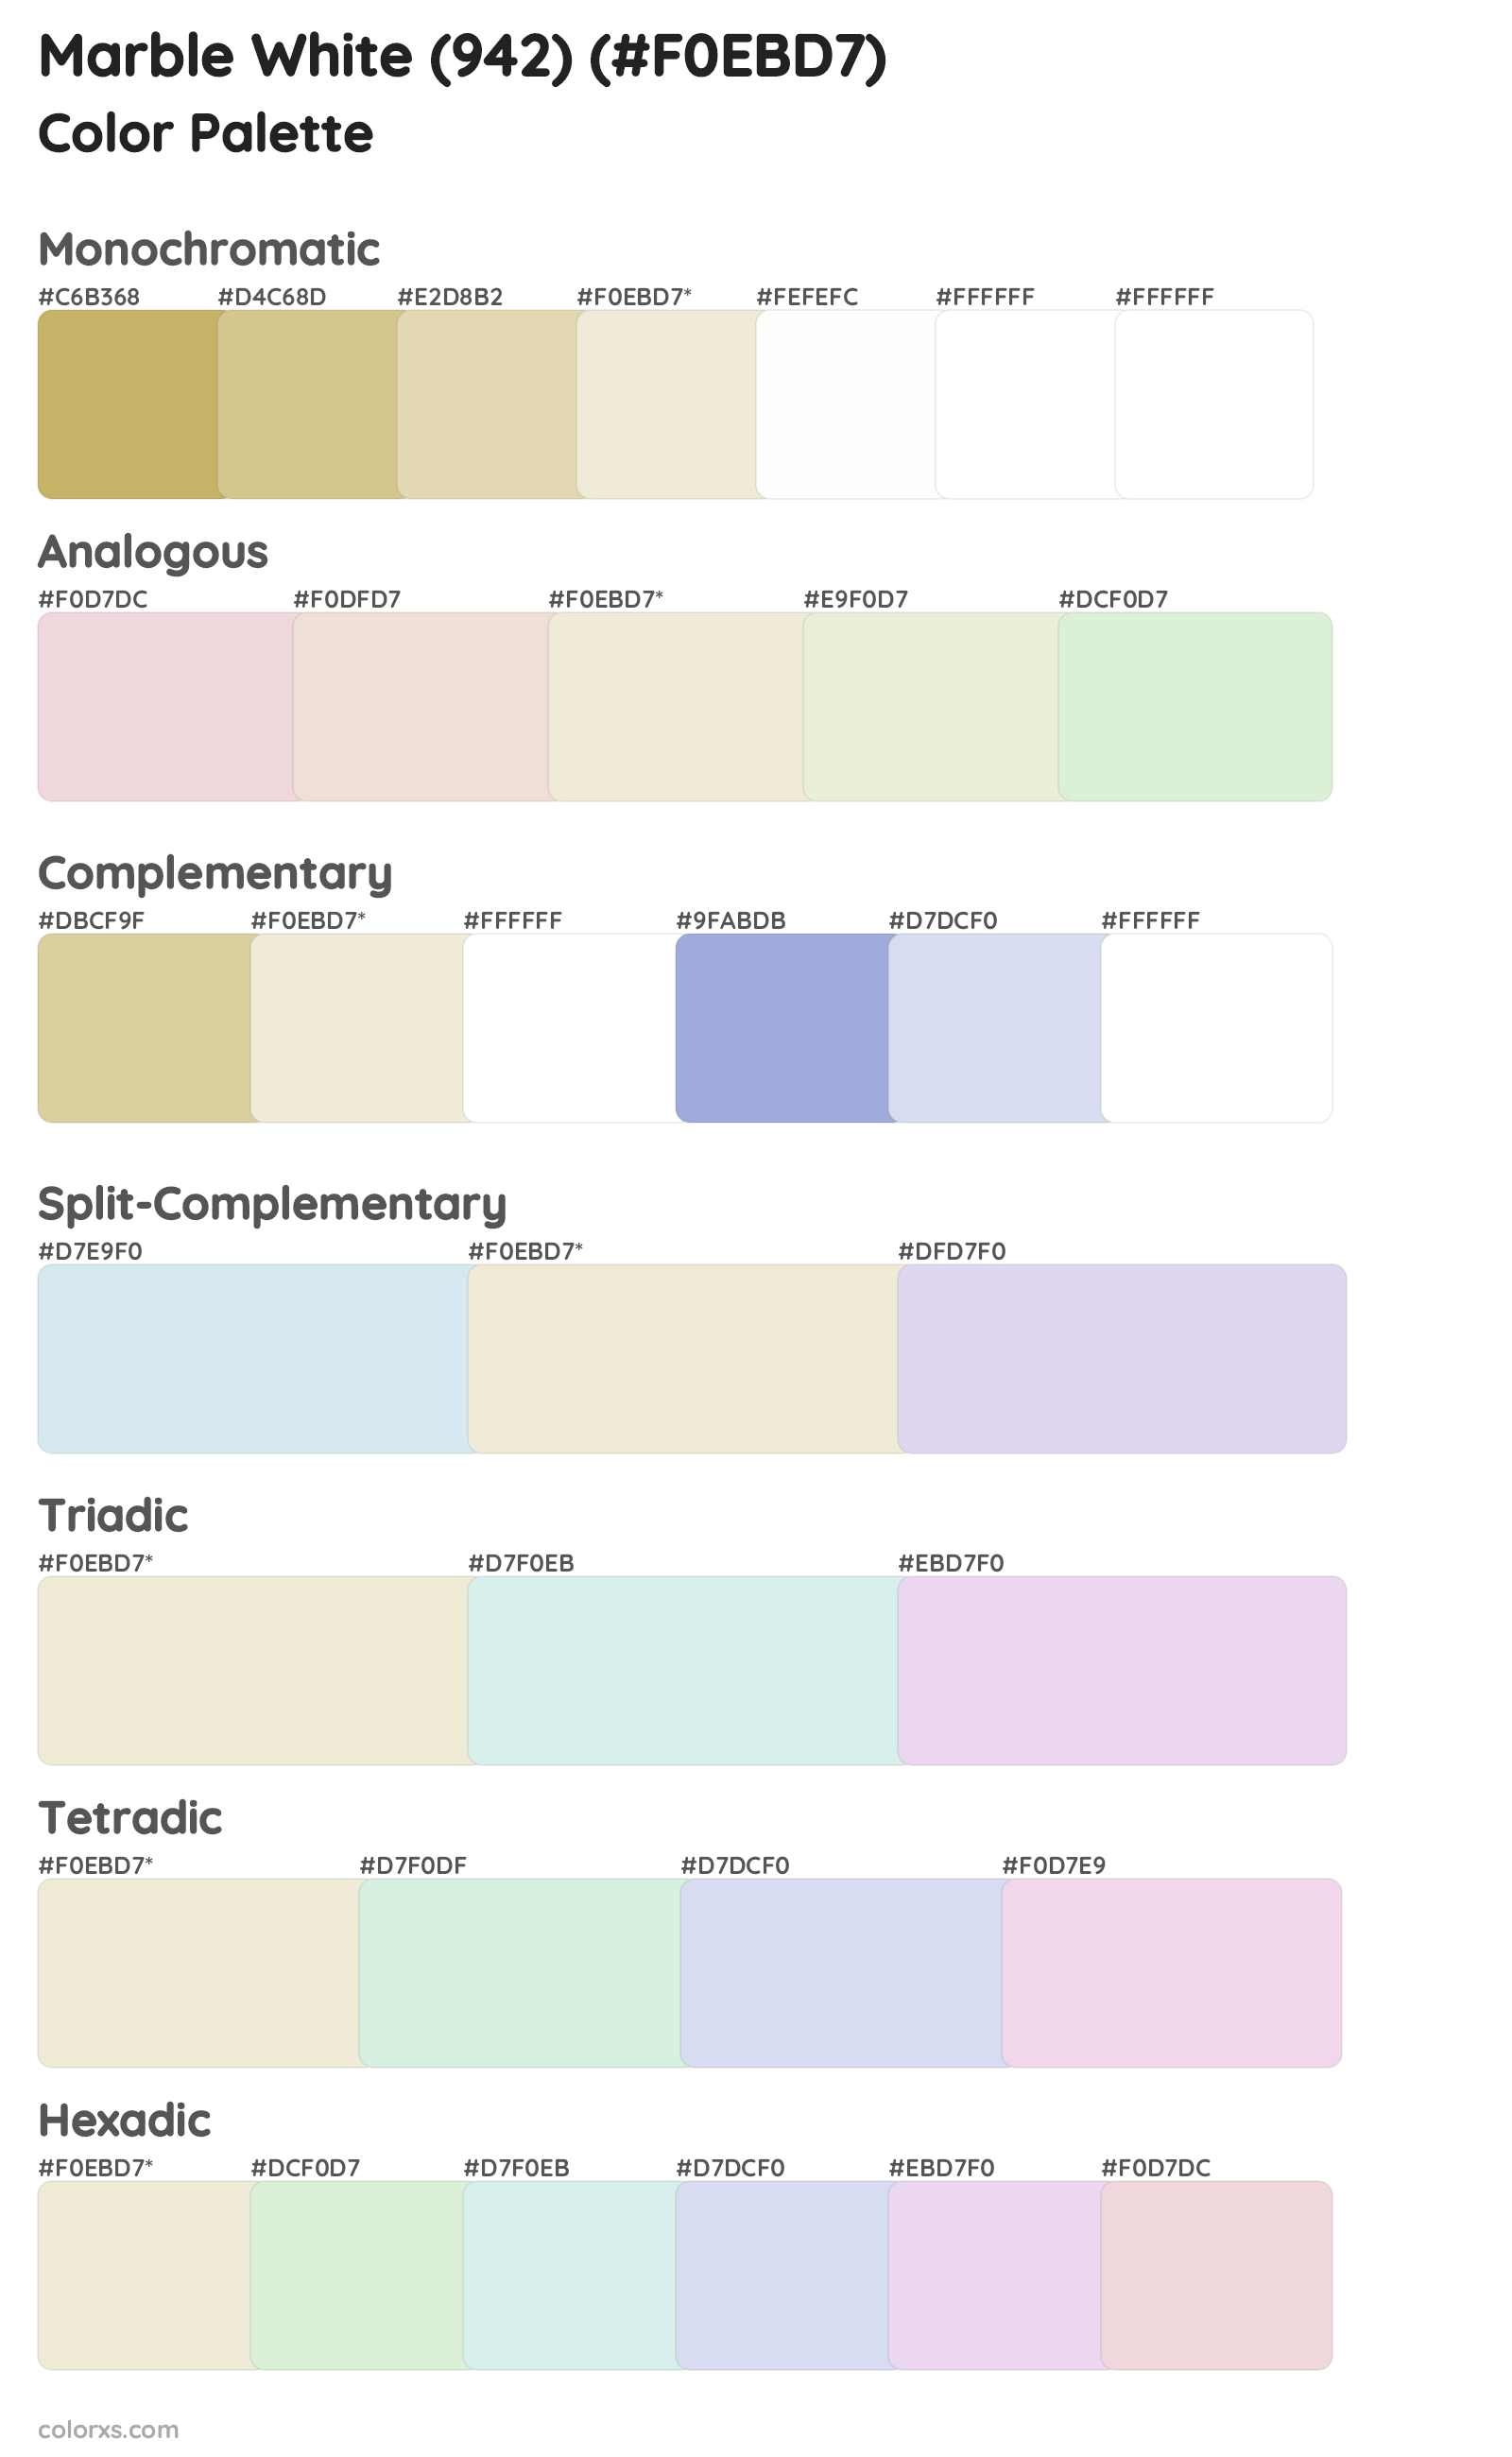 Marble White (942) Color Scheme Palettes